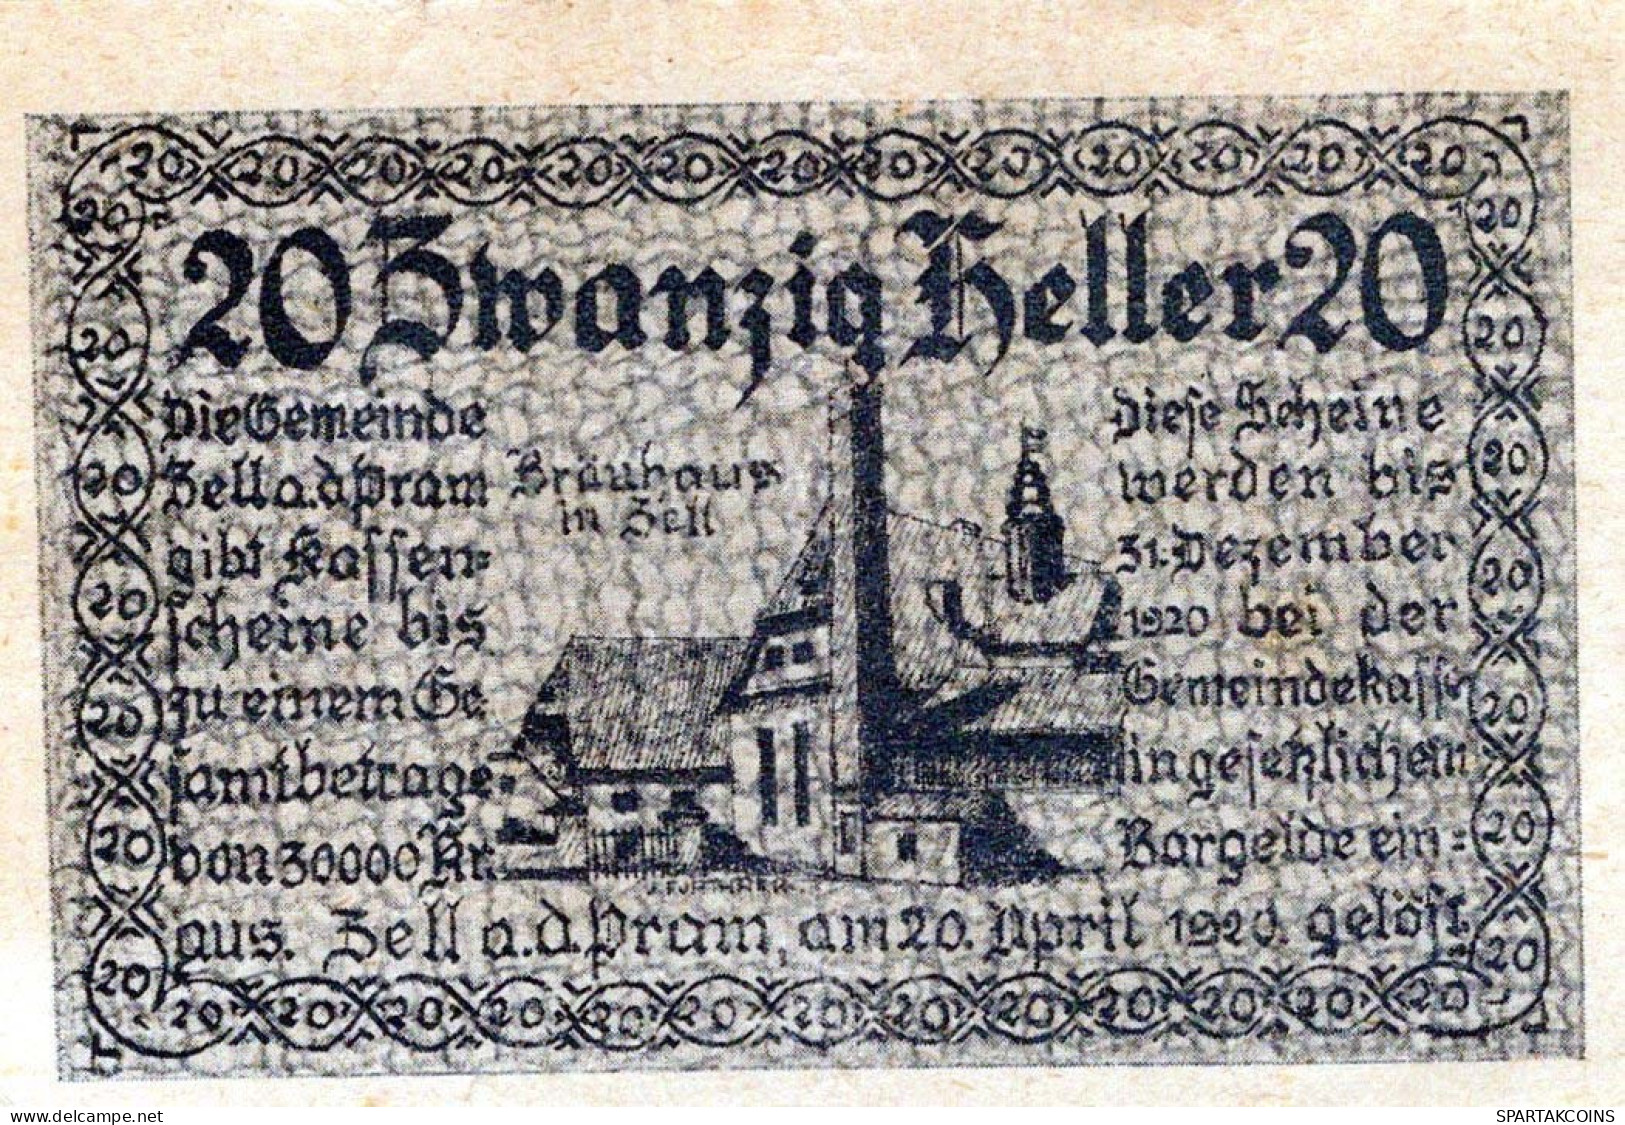 20 HELLER 1920 Stadt ZELL AN DER PRAM Oberösterreich Österreich Notgeld #PE097 - [11] Lokale Uitgaven